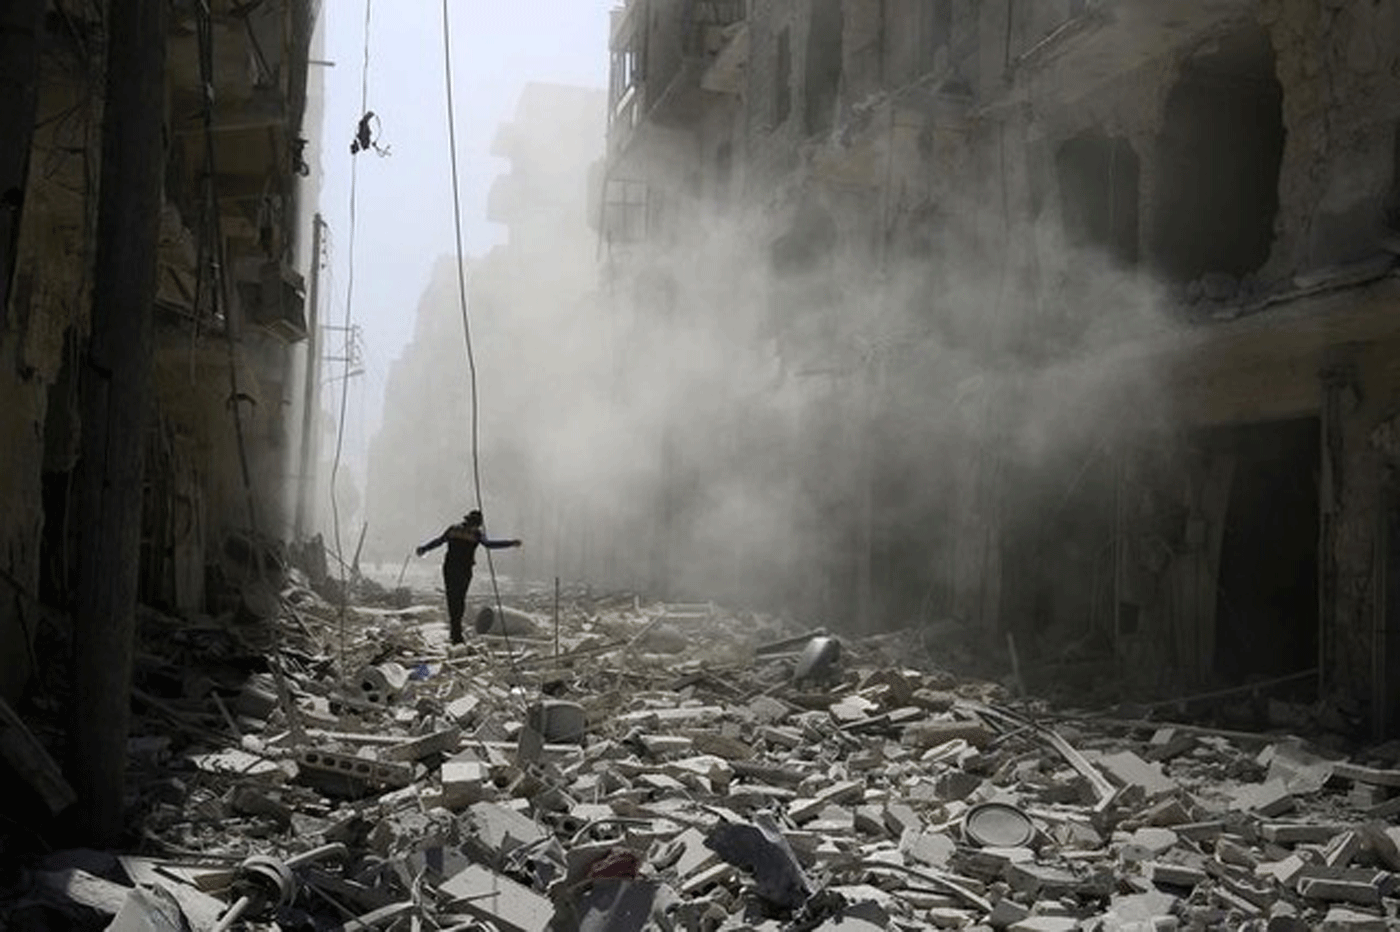 Los dos mayores hospitales de la zona rebelde de Alepo alcanzados por bombardeos